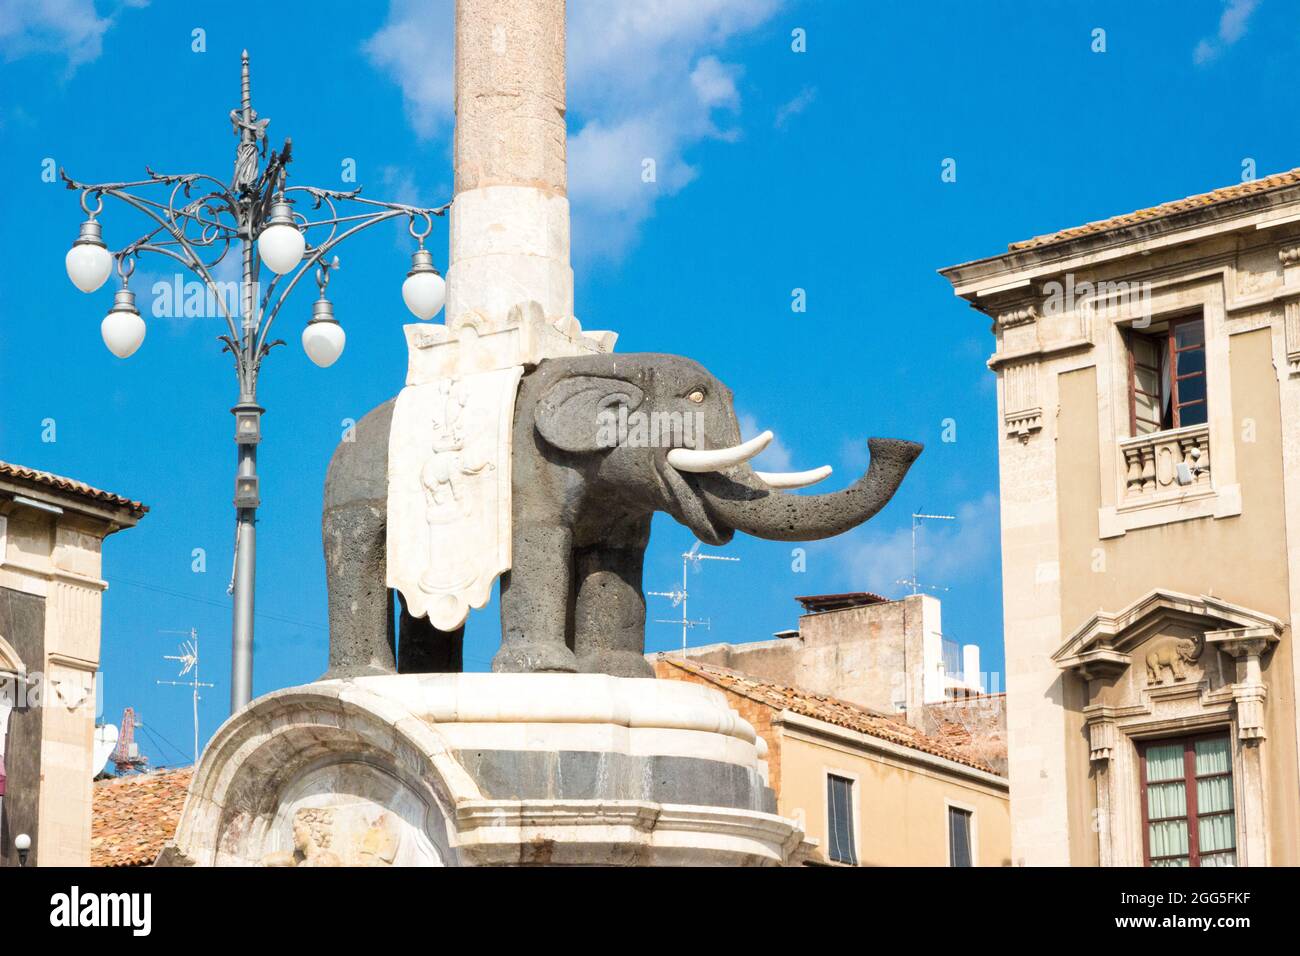 Le symbole de la ville de Catane en Sicile, en Italie, est u Liotru (l'éléphant), ou la Fontana dell'Elefante (la fontaine de l'éléphant), assemblée en 1736 Banque D'Images